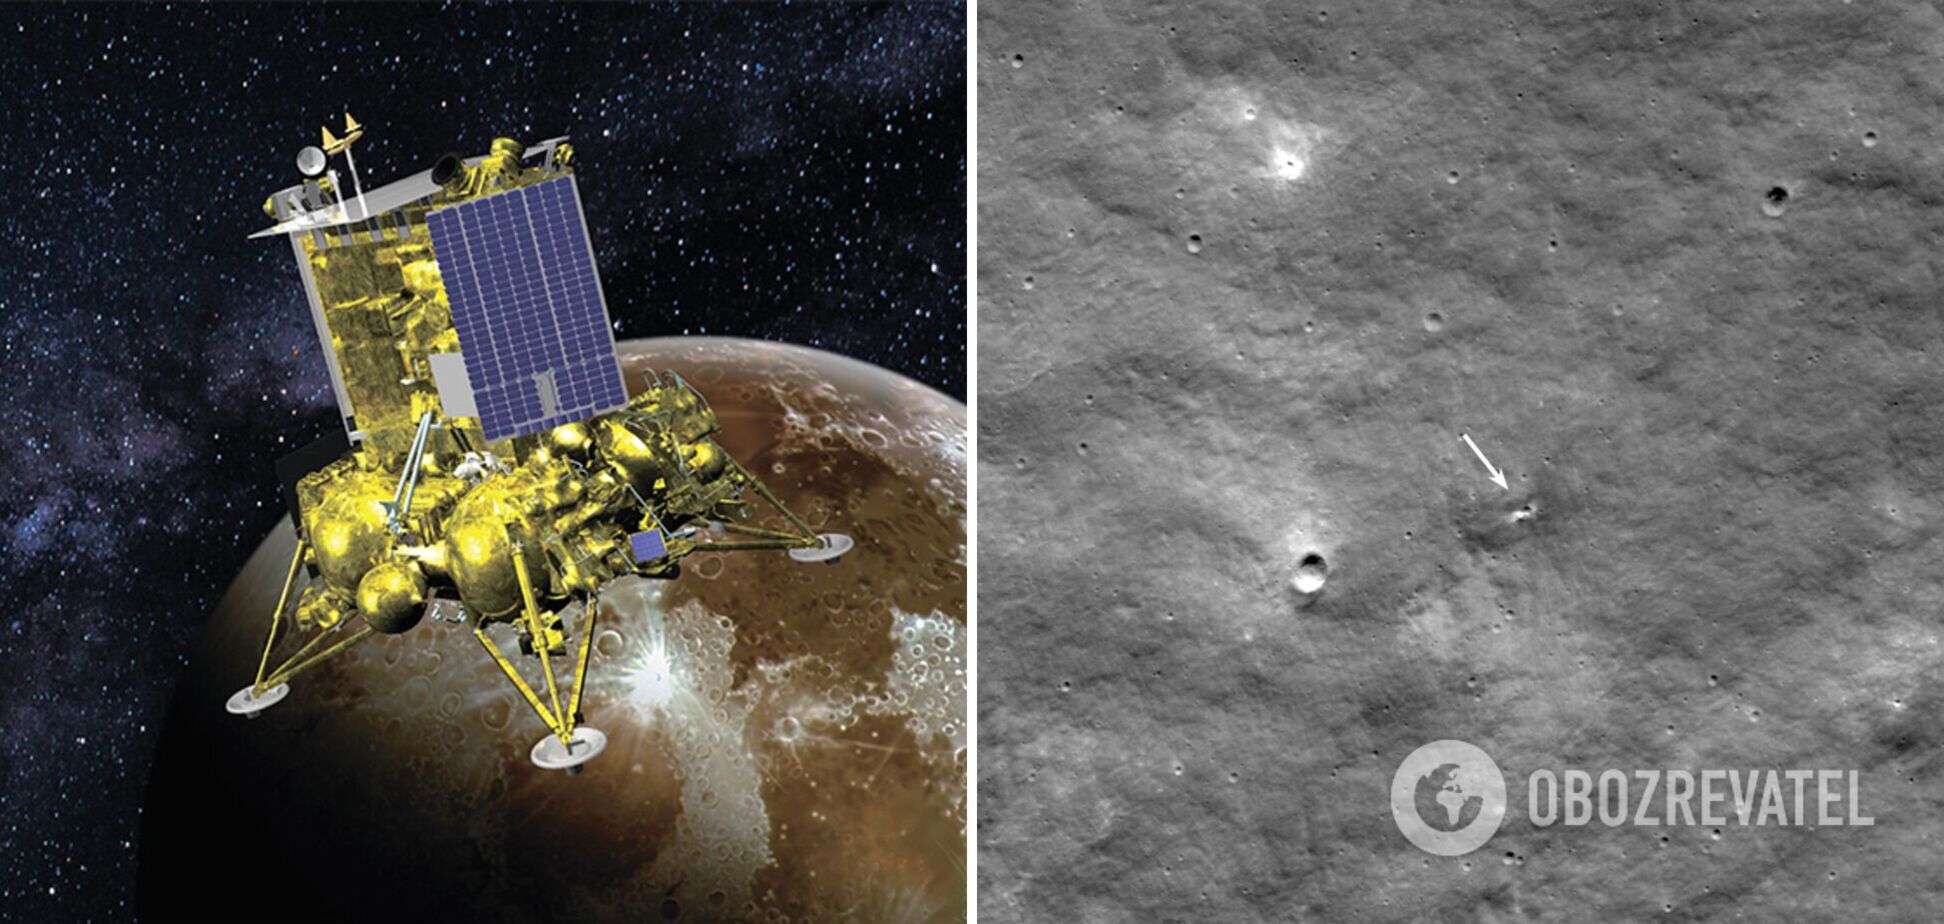 Росія здатна пробити дно не лише на Землі: від падіння модуля 'Луна-25' на Місяці утворився кратер. Фото